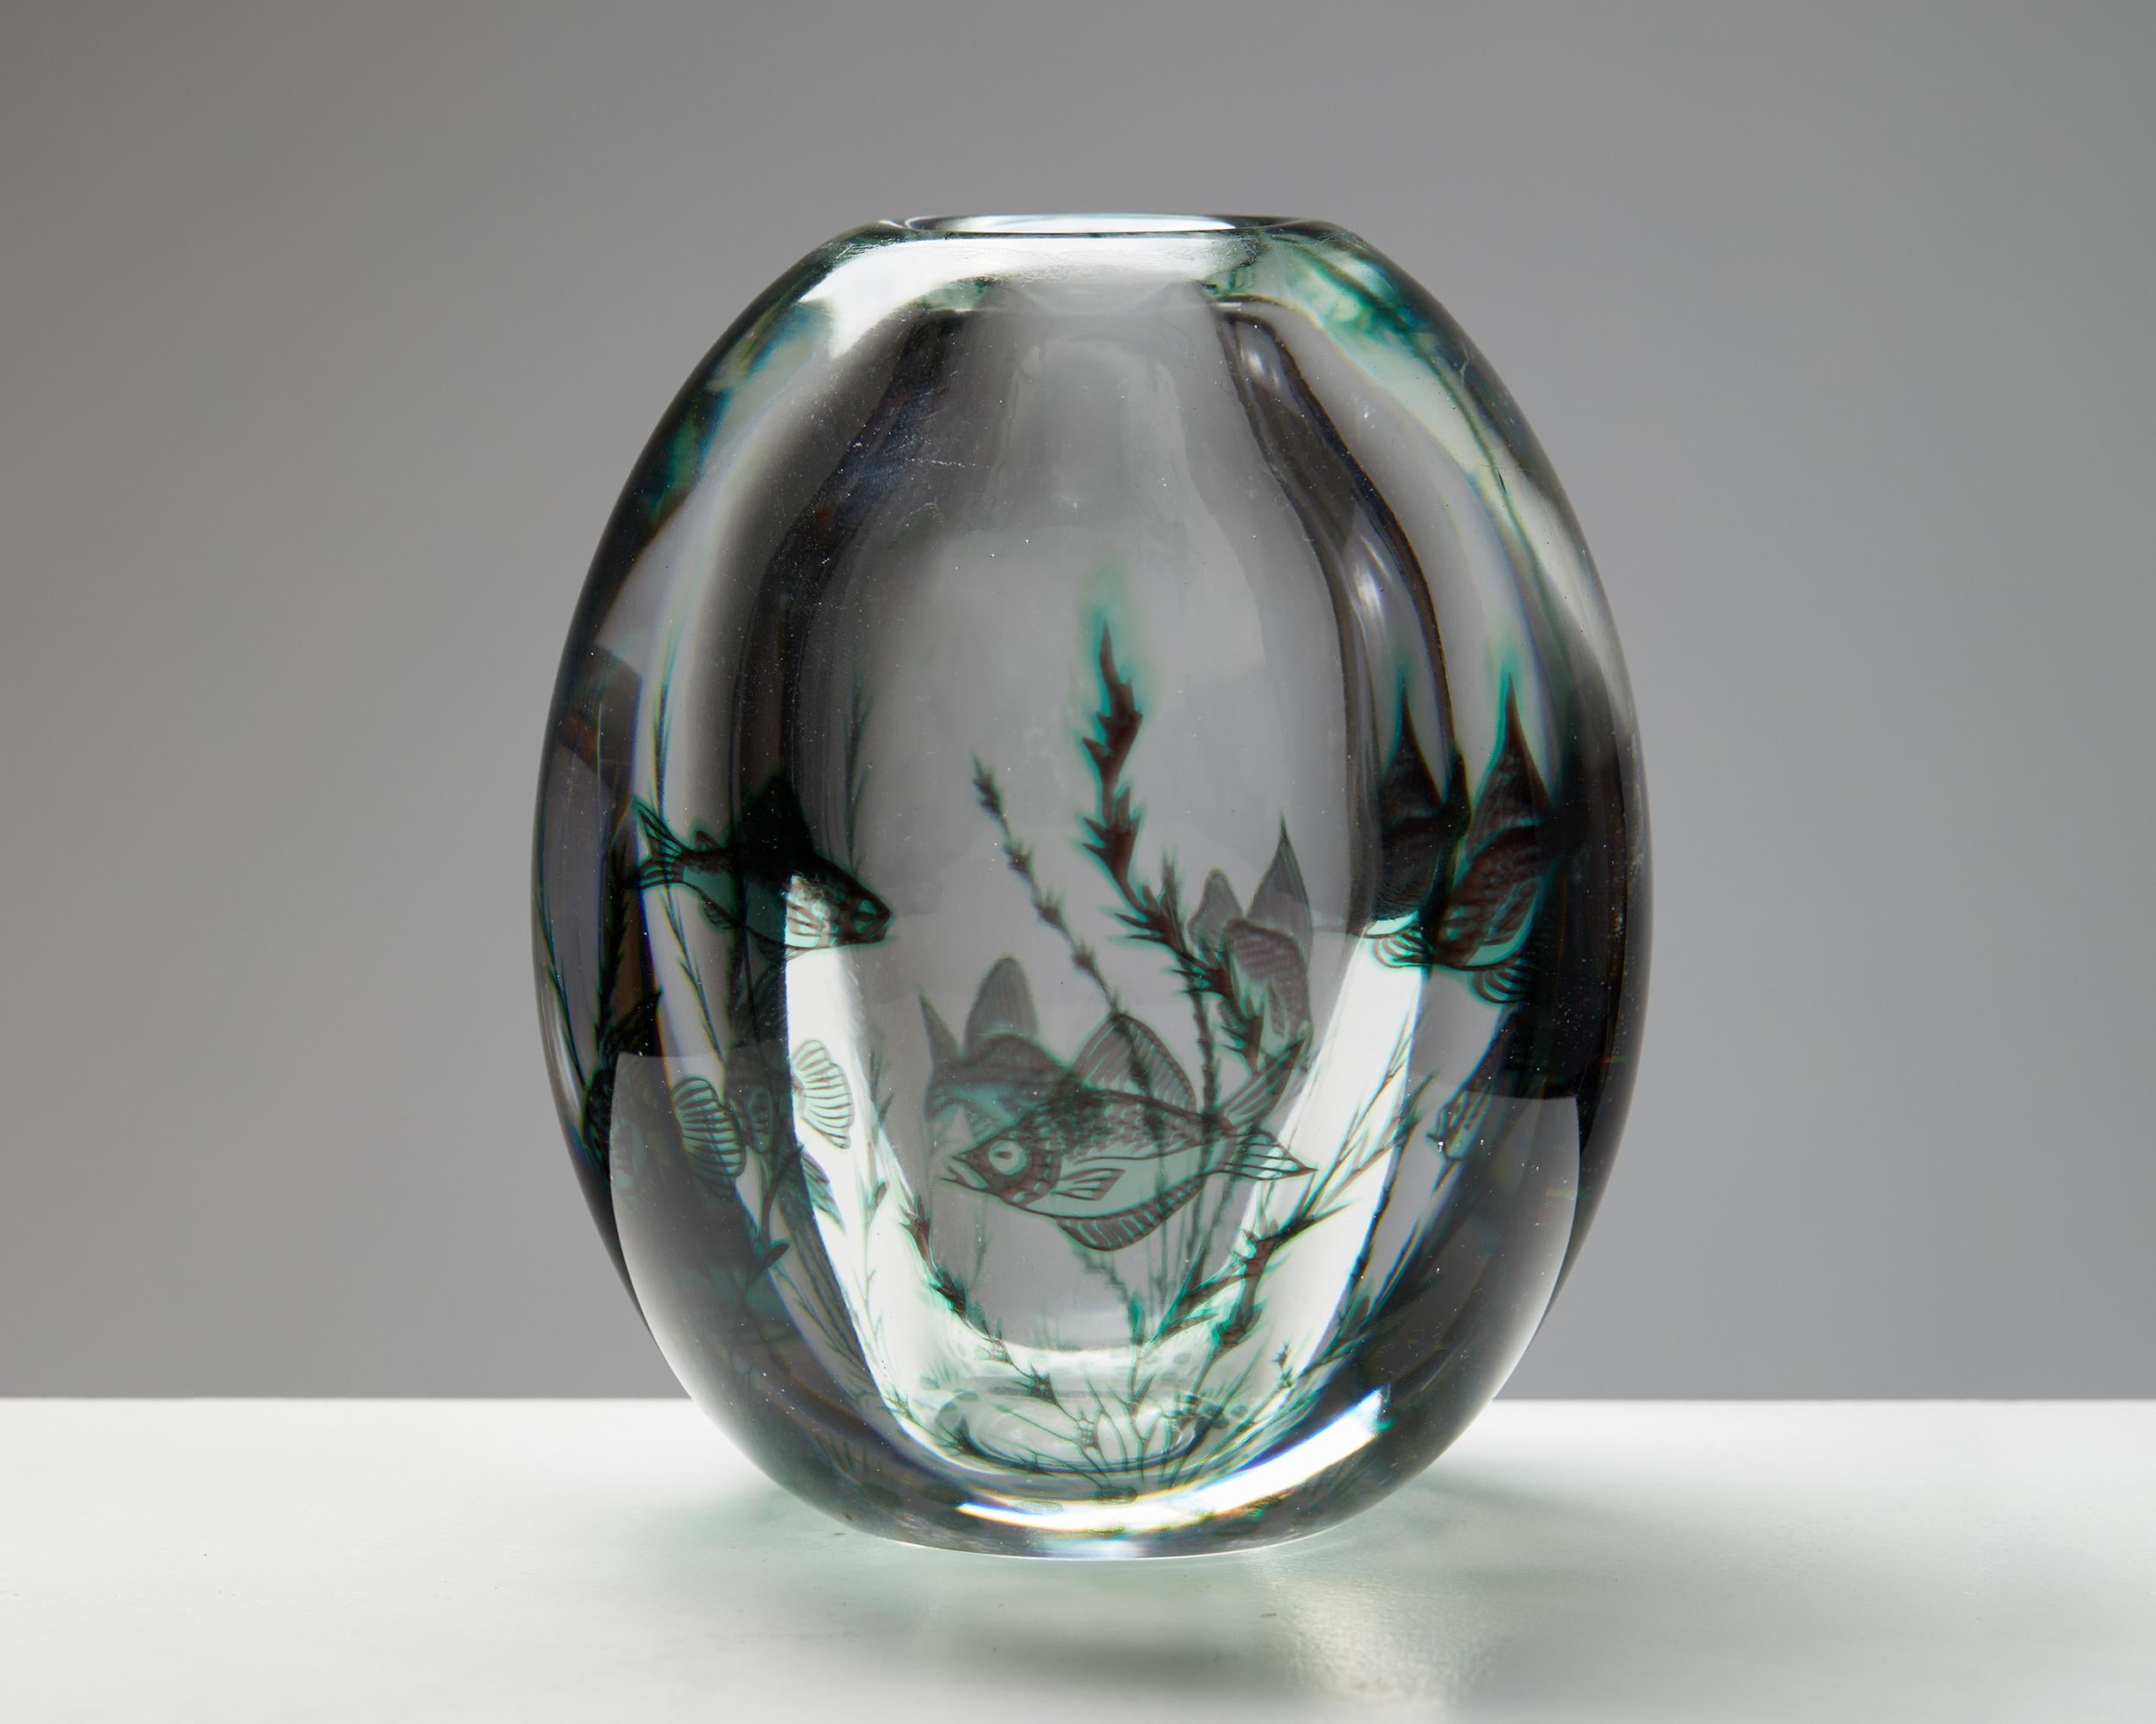 Vase, entworfen von Edward Hald für Orrefors,
Schweden. 1940s.

Glas.

Unterschrieben.

Edward Hald (1883 - 1980) ist einer der bekannten schwedischen Glaskünstler, die für Orrefors gearbeitet haben. Nach dem Studium in Leipzig absolvierte er seine